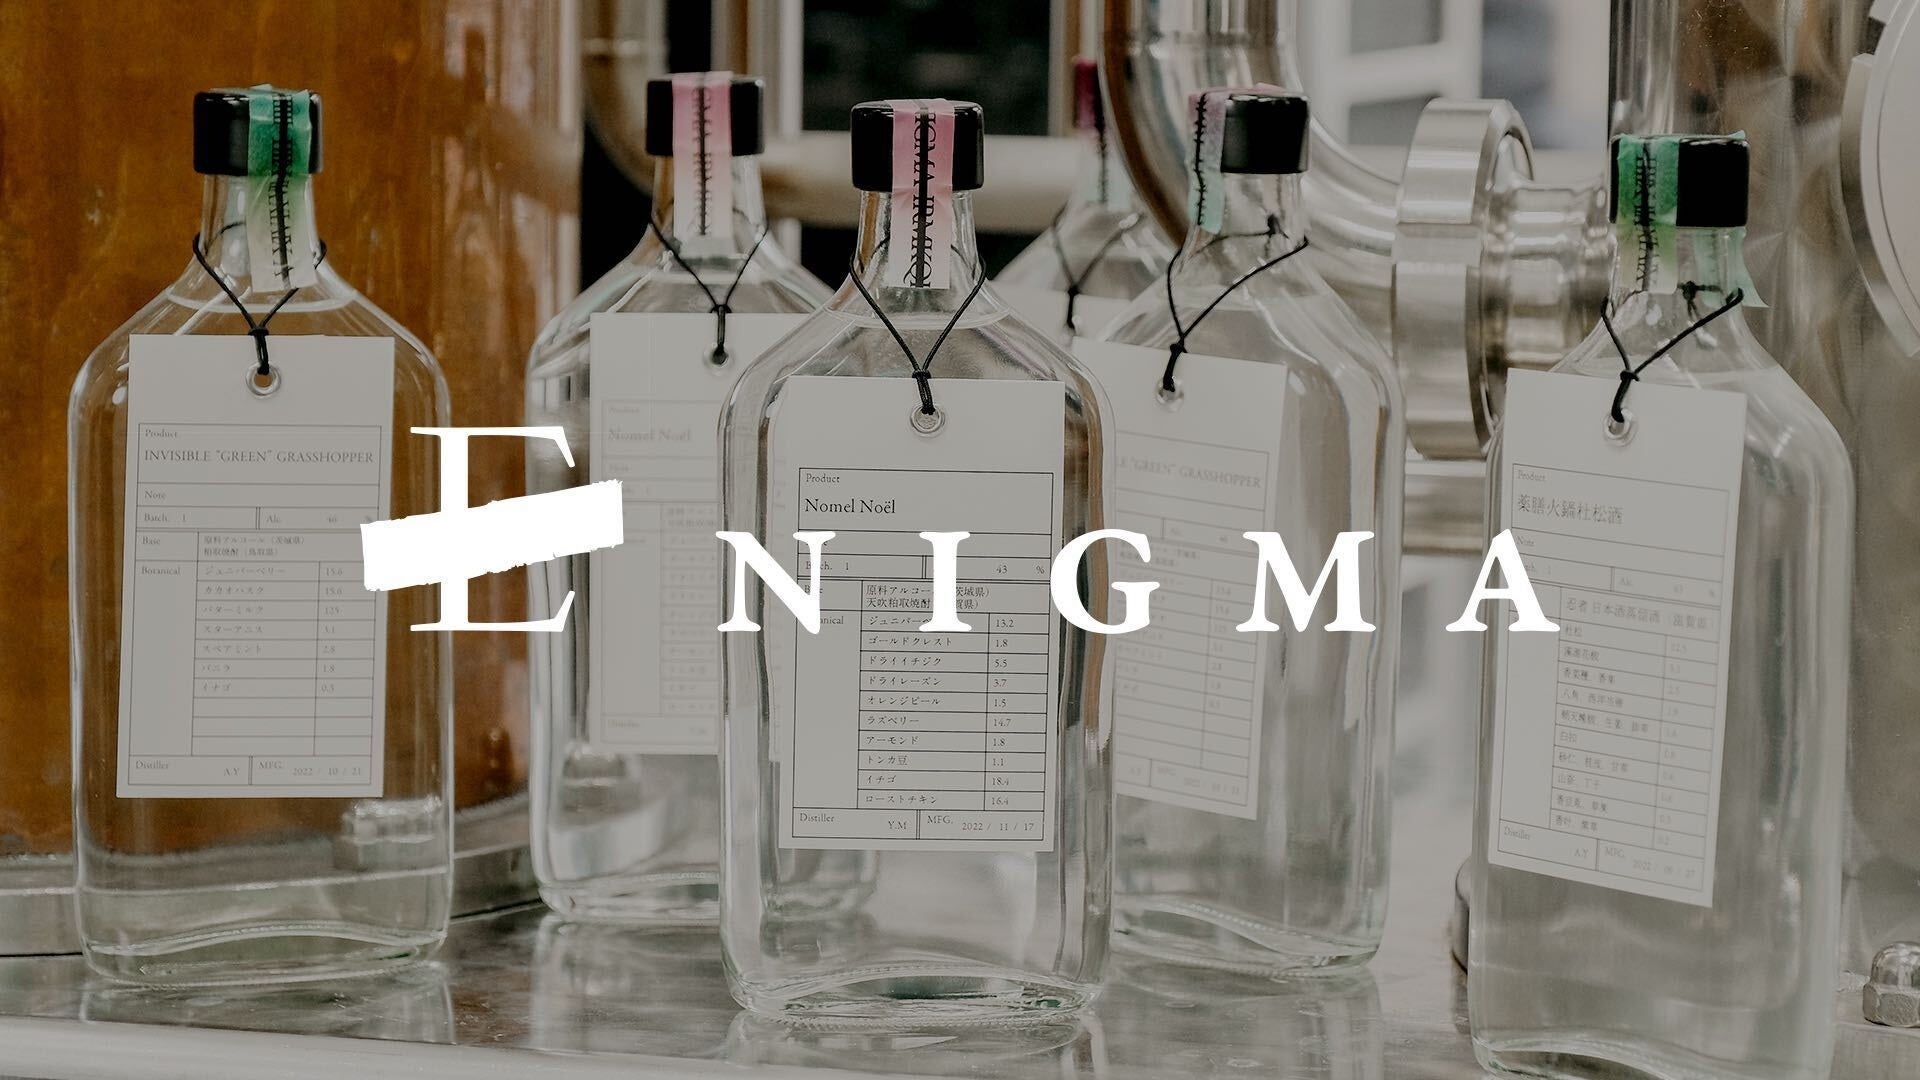 椎茸やみりんを使ったエシカル蒸留酒 “素材の可能性を実験する” 『ENIGMA』シリーズが毎月届く『スピリッツ・メイト』が新スタート